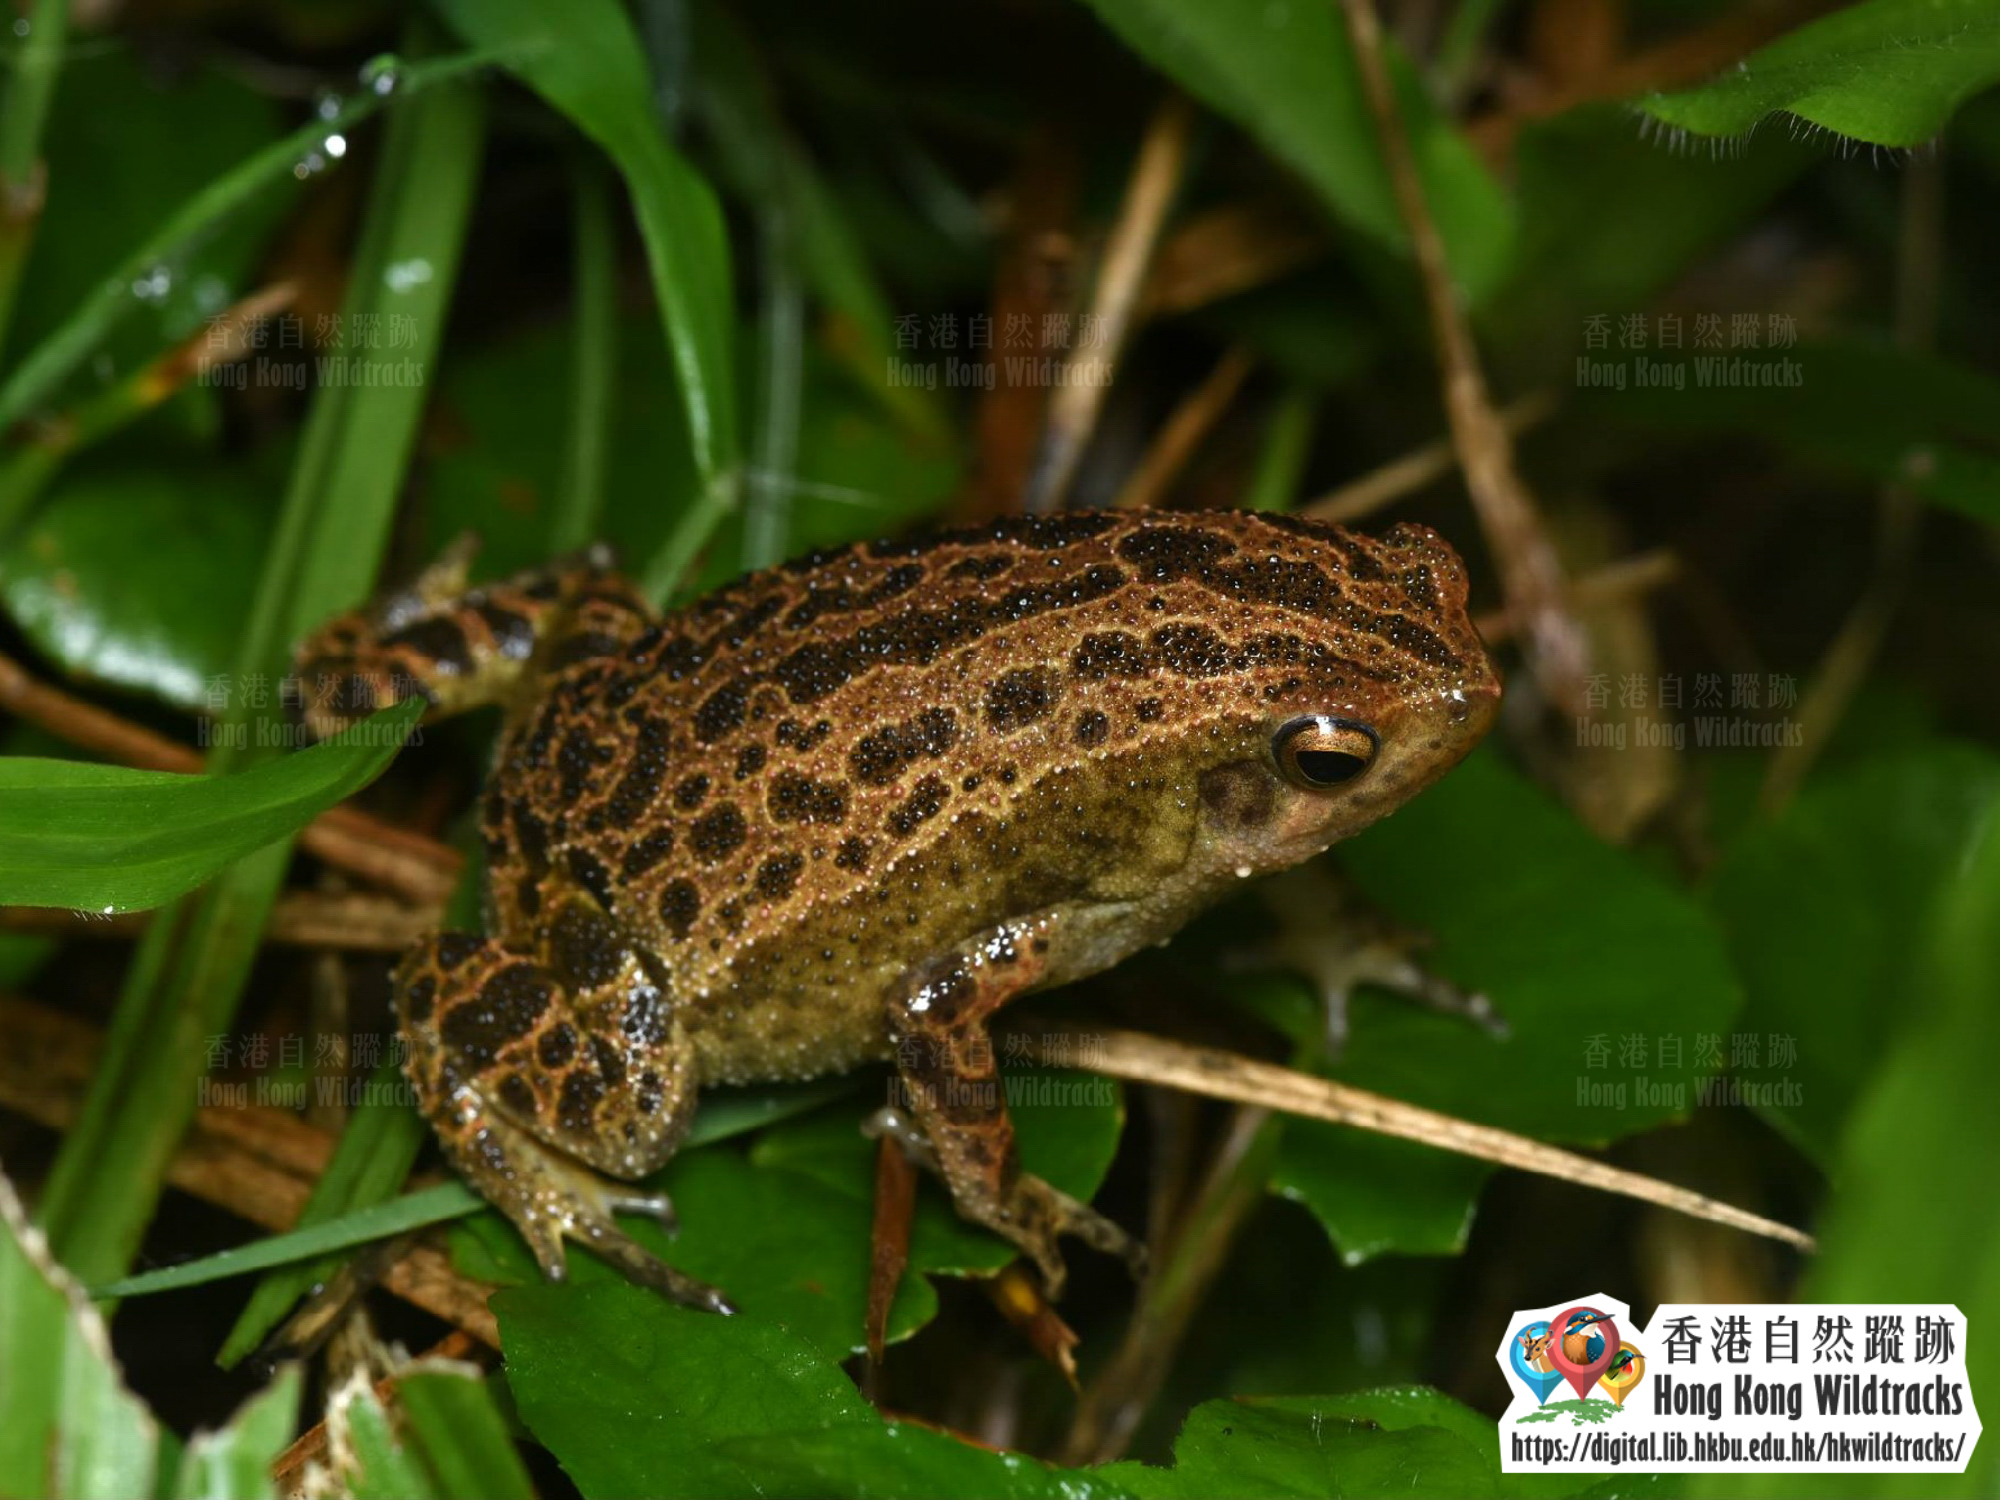 花細狹口蛙 Spotted Narrow-mouthed Frog